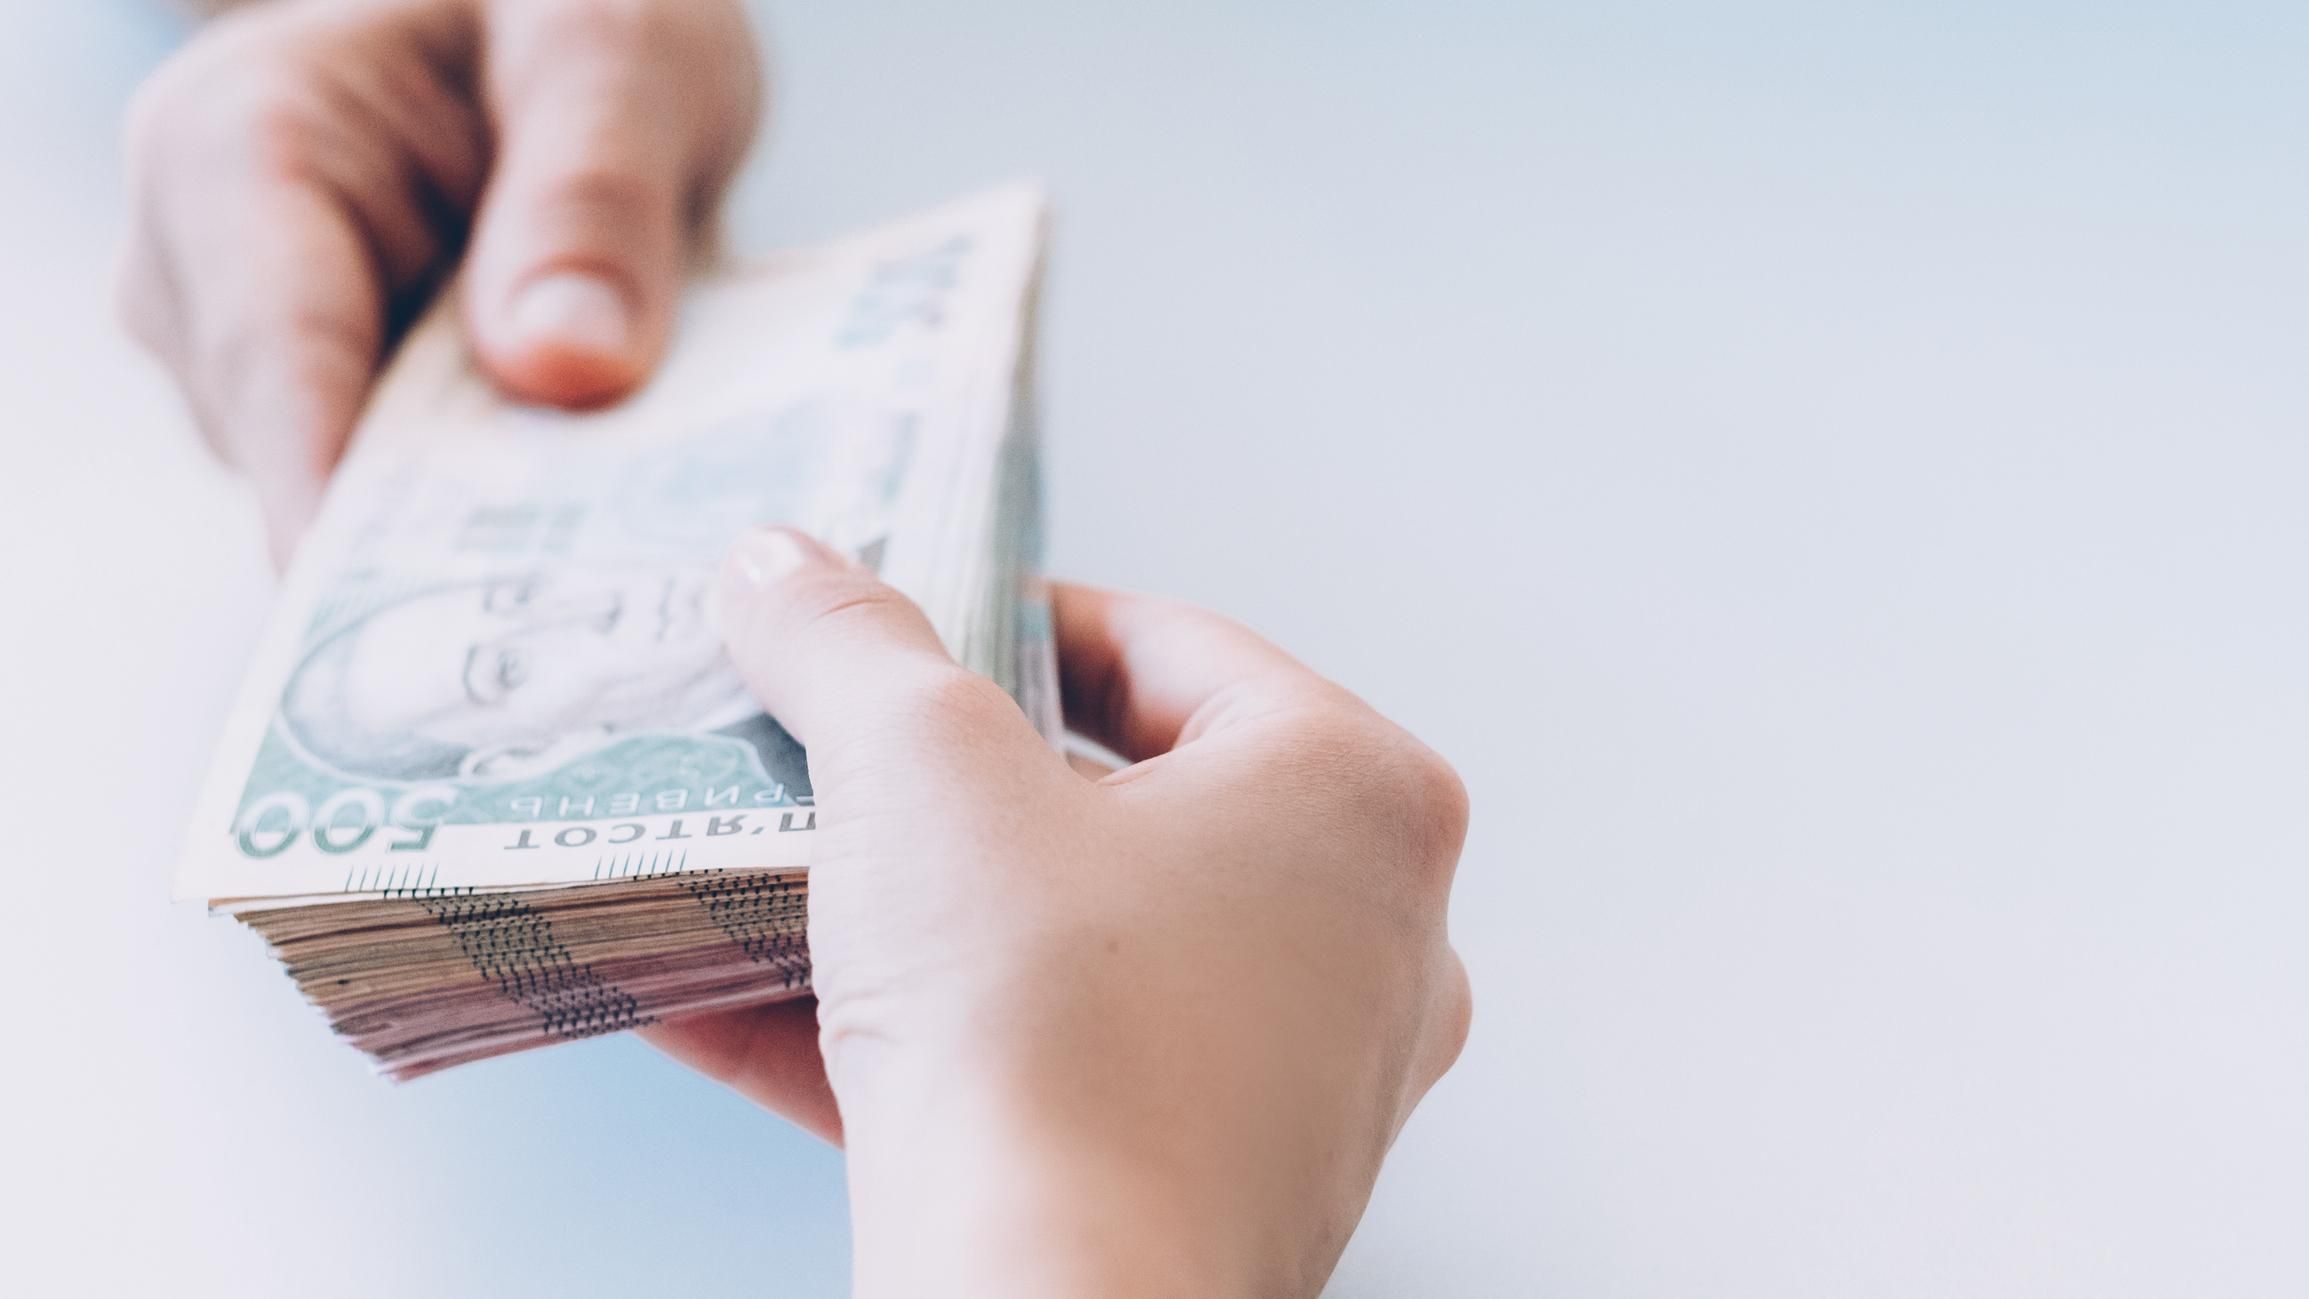 Сколько Украина должна выплатить по госдолгу до конца года: данные Минфина - Новости экономики Украины - Экономика